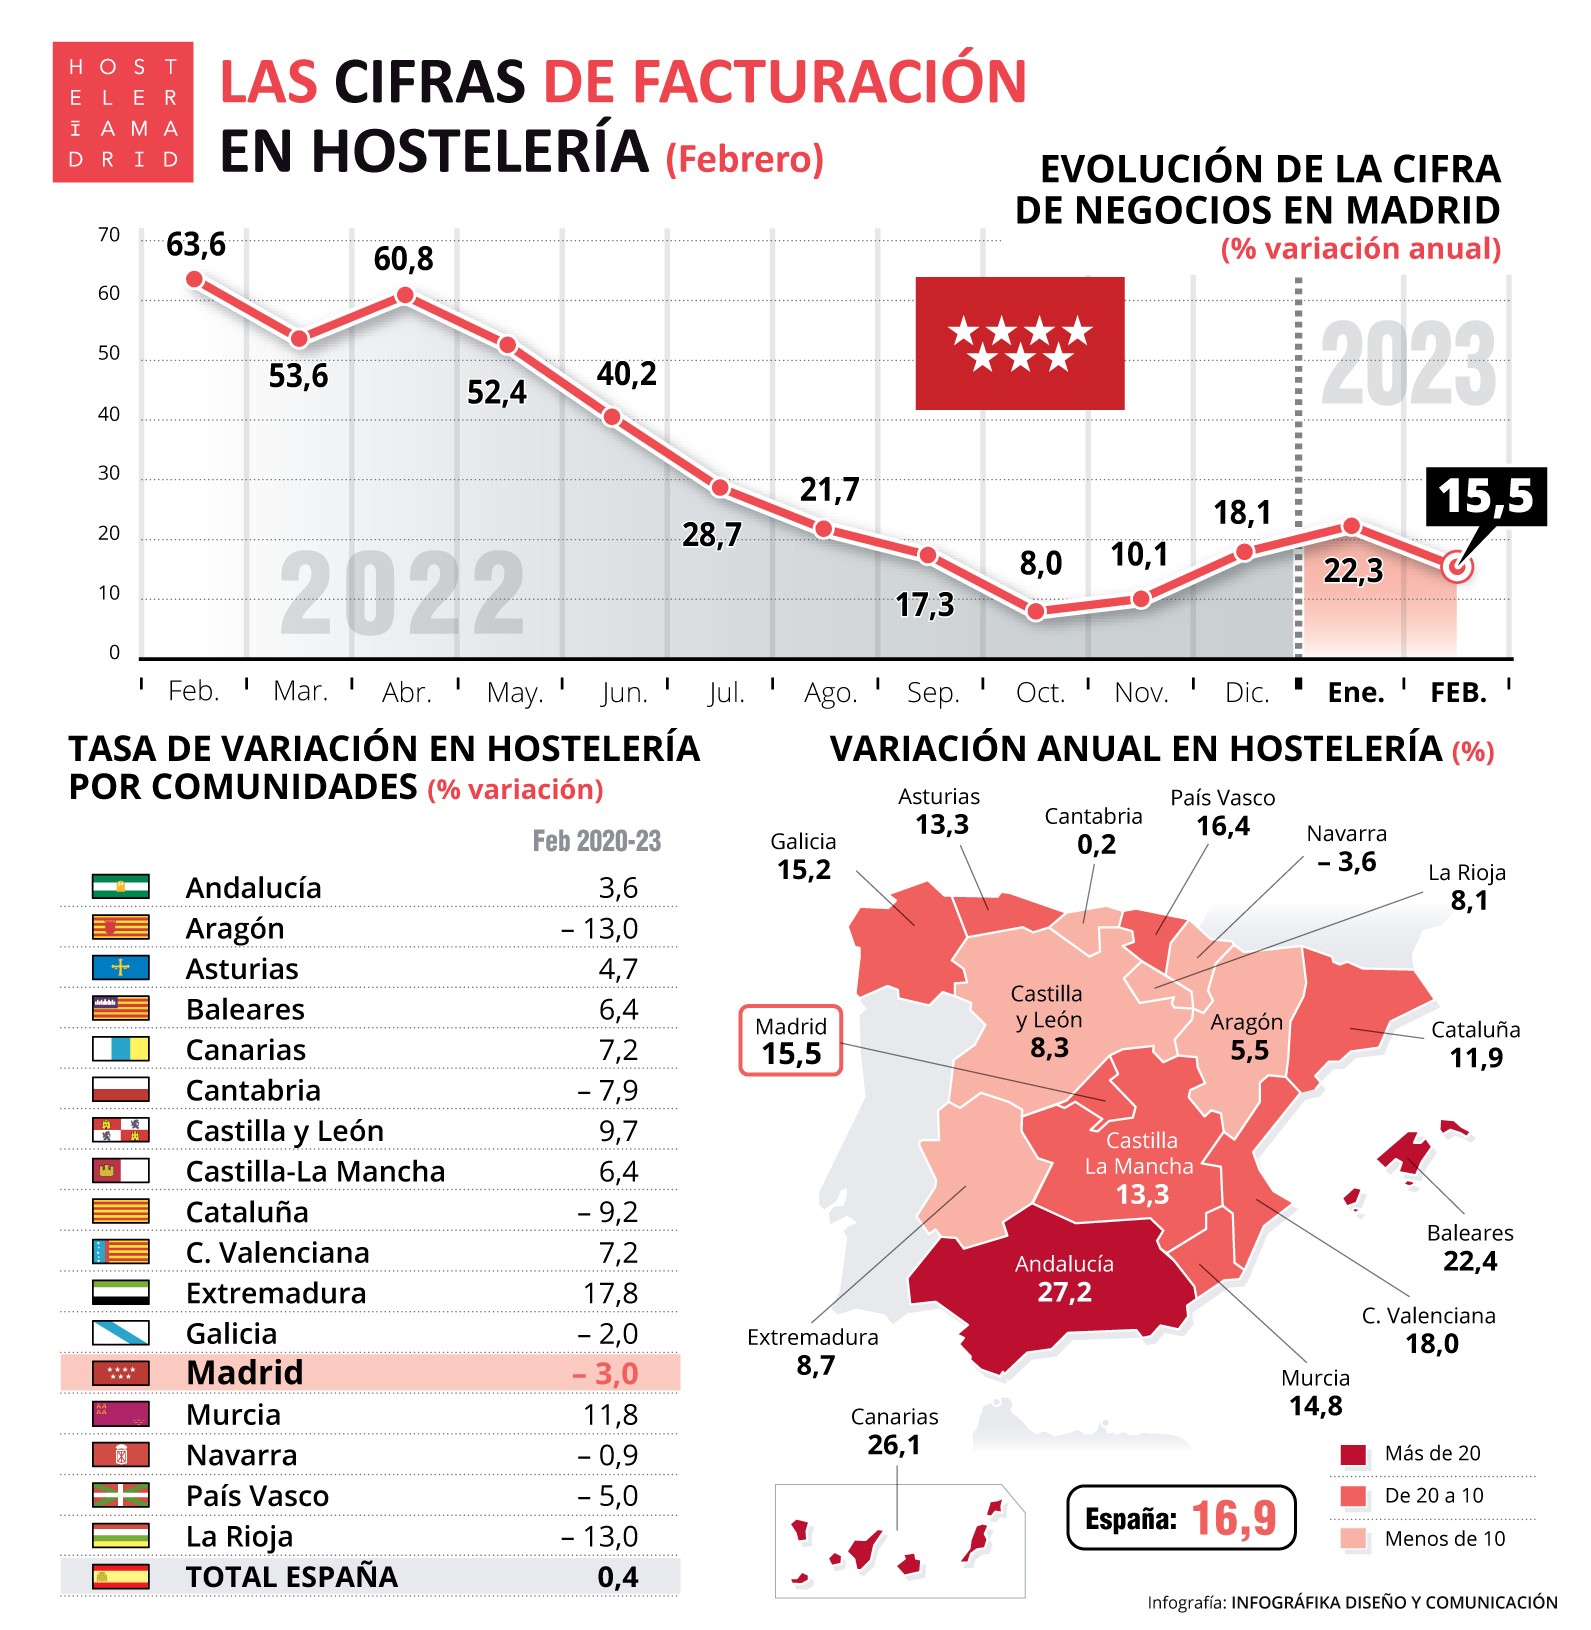 La hostelería de Madrid factura en febrero un 15,5% más que el año anterior - La Viña